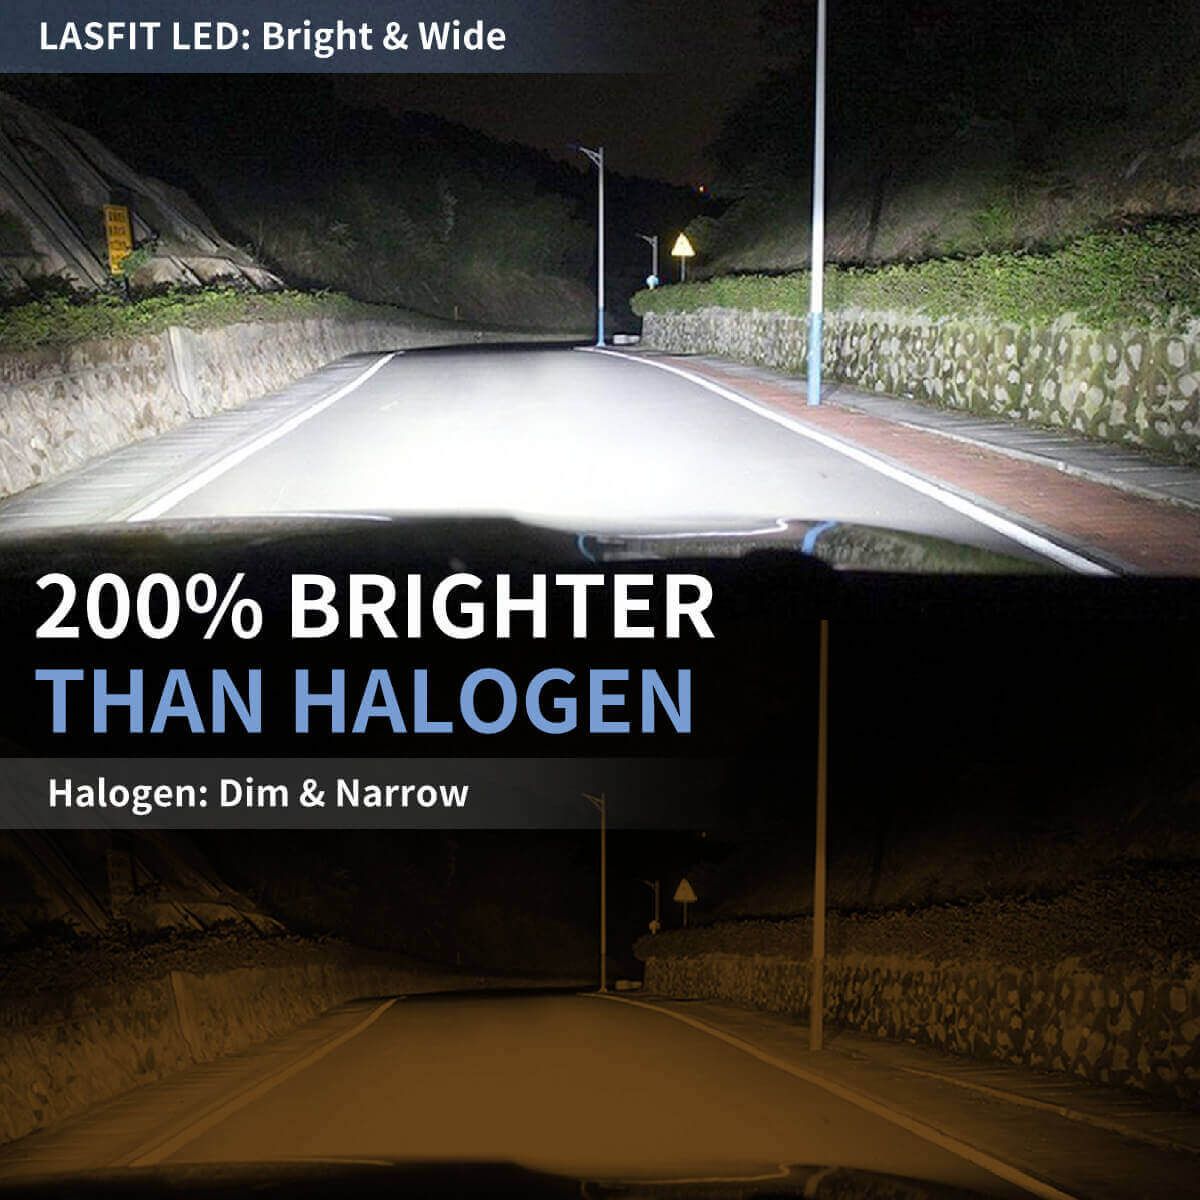 9006 HB4 LED Bulbs｜LA Plus Series｜Lasfit Auto Lighting